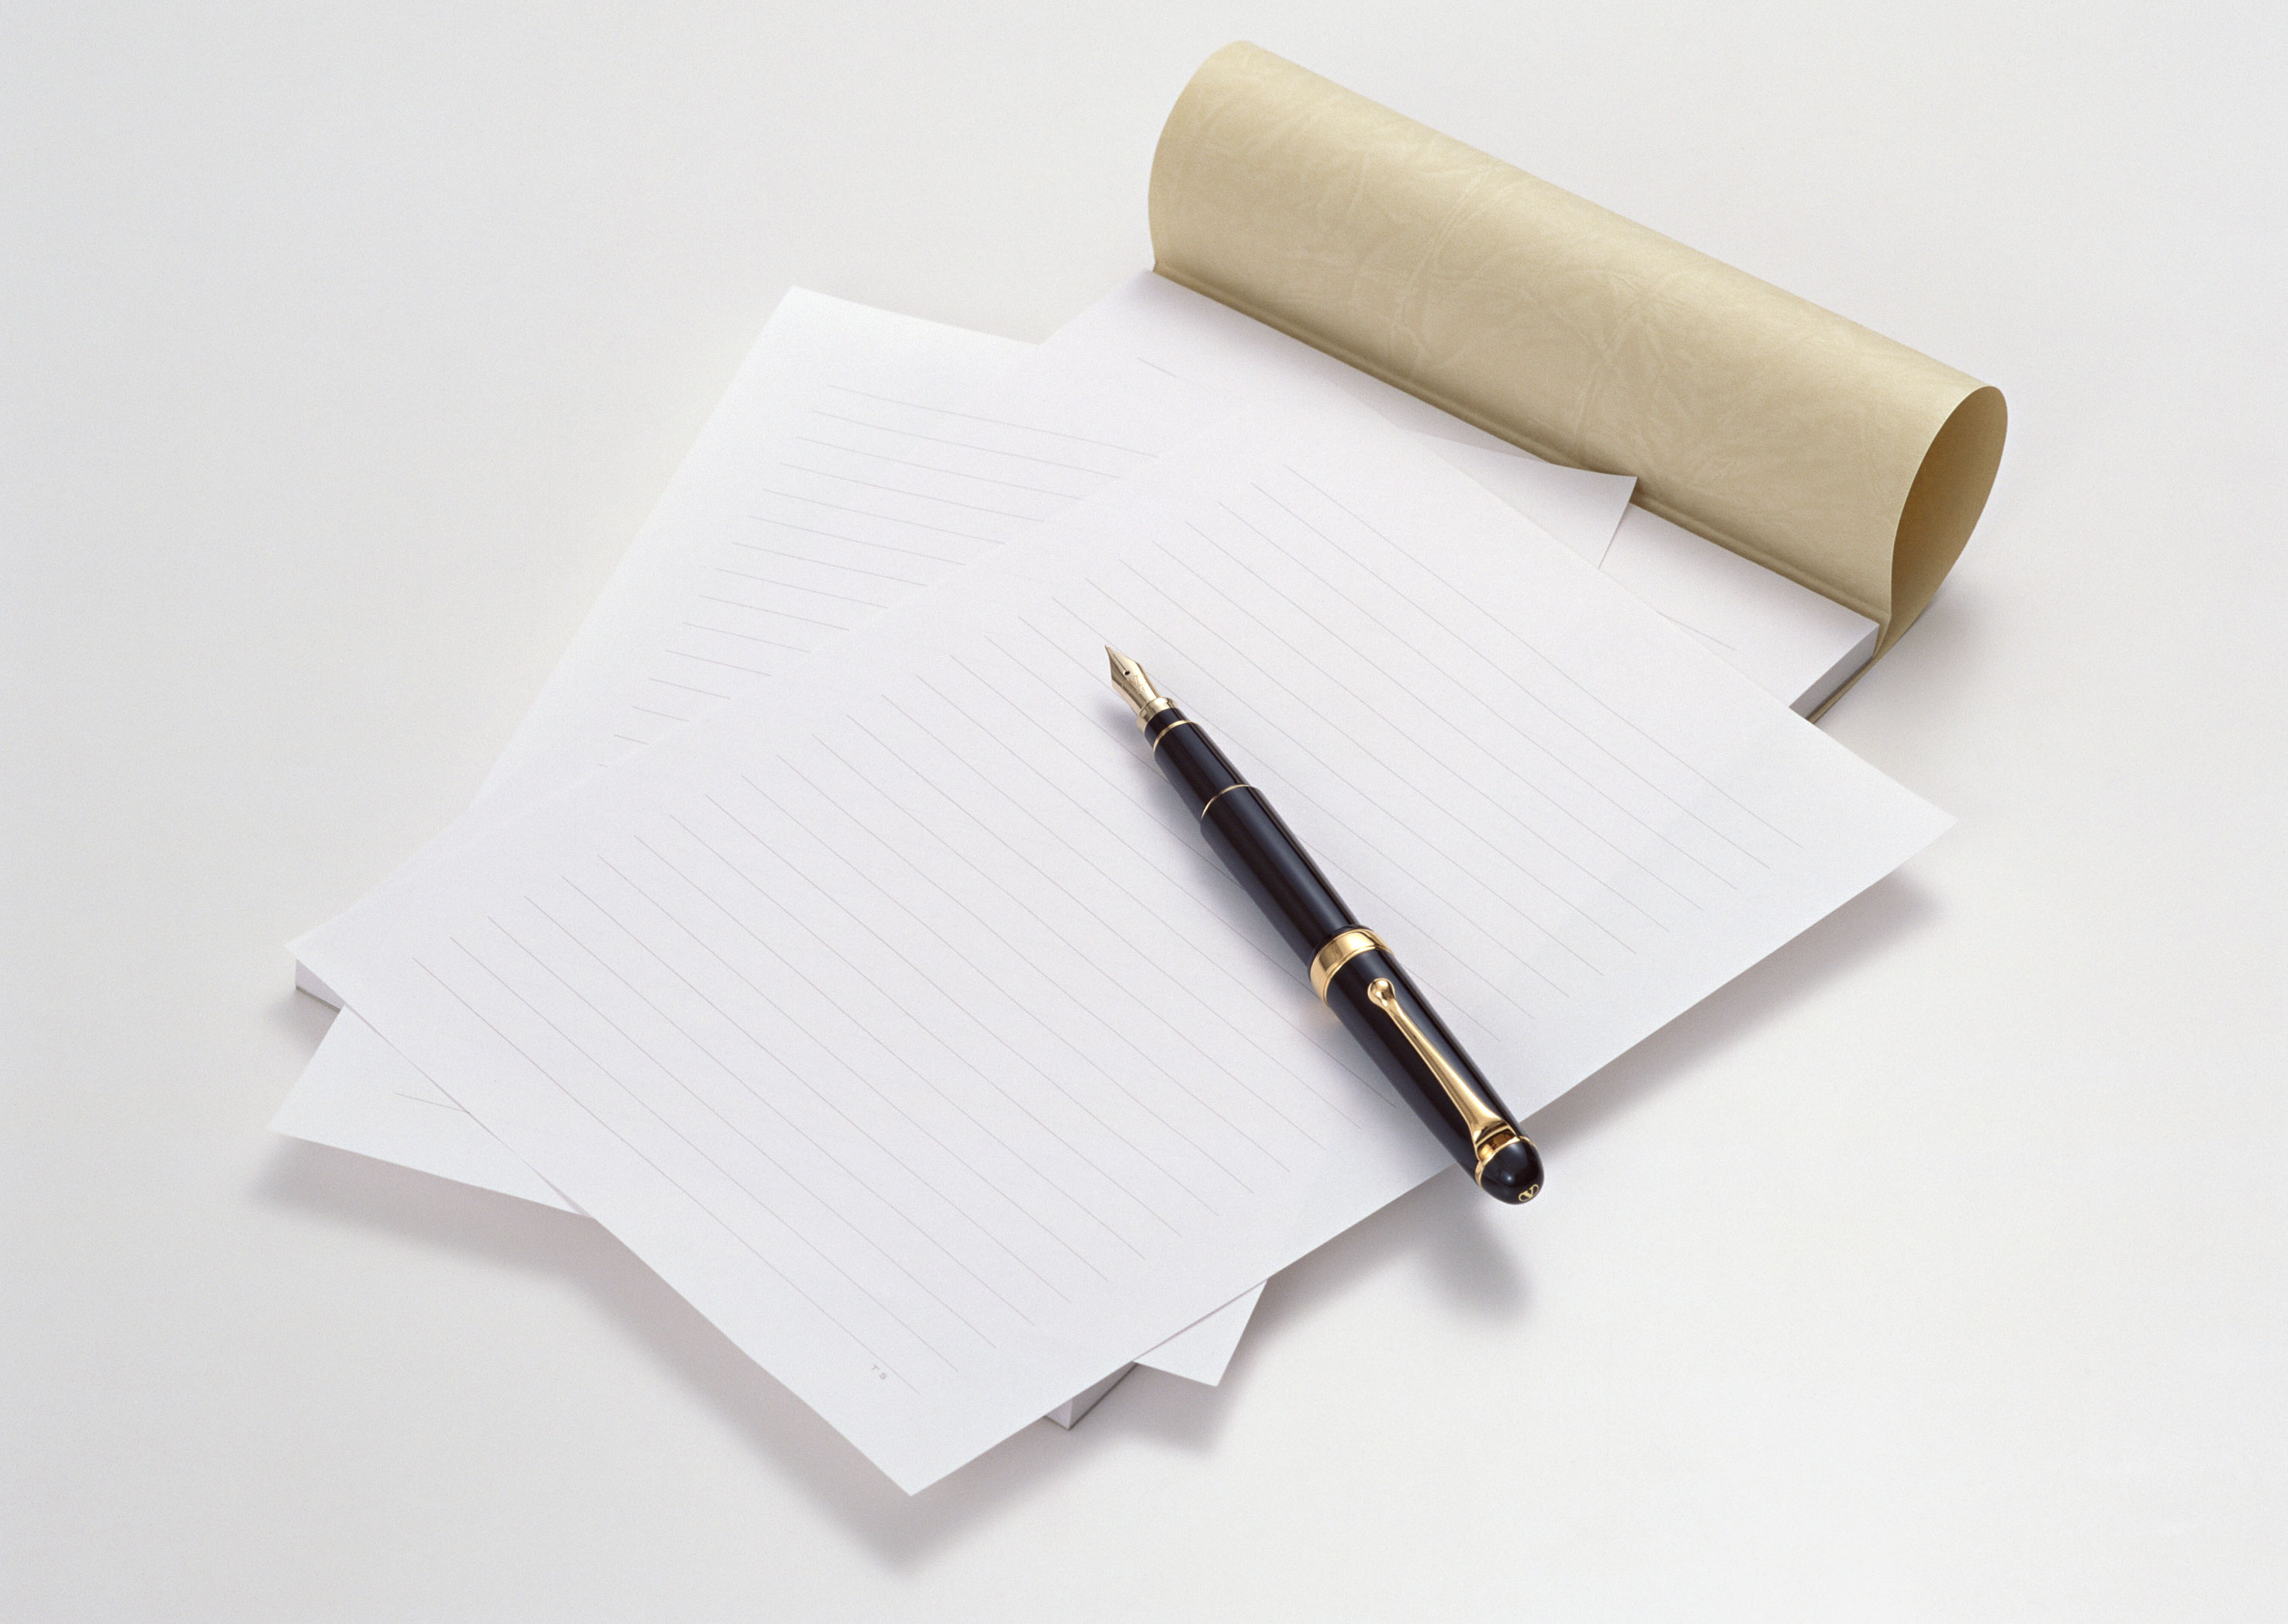 лист бумаги и ручка на столе